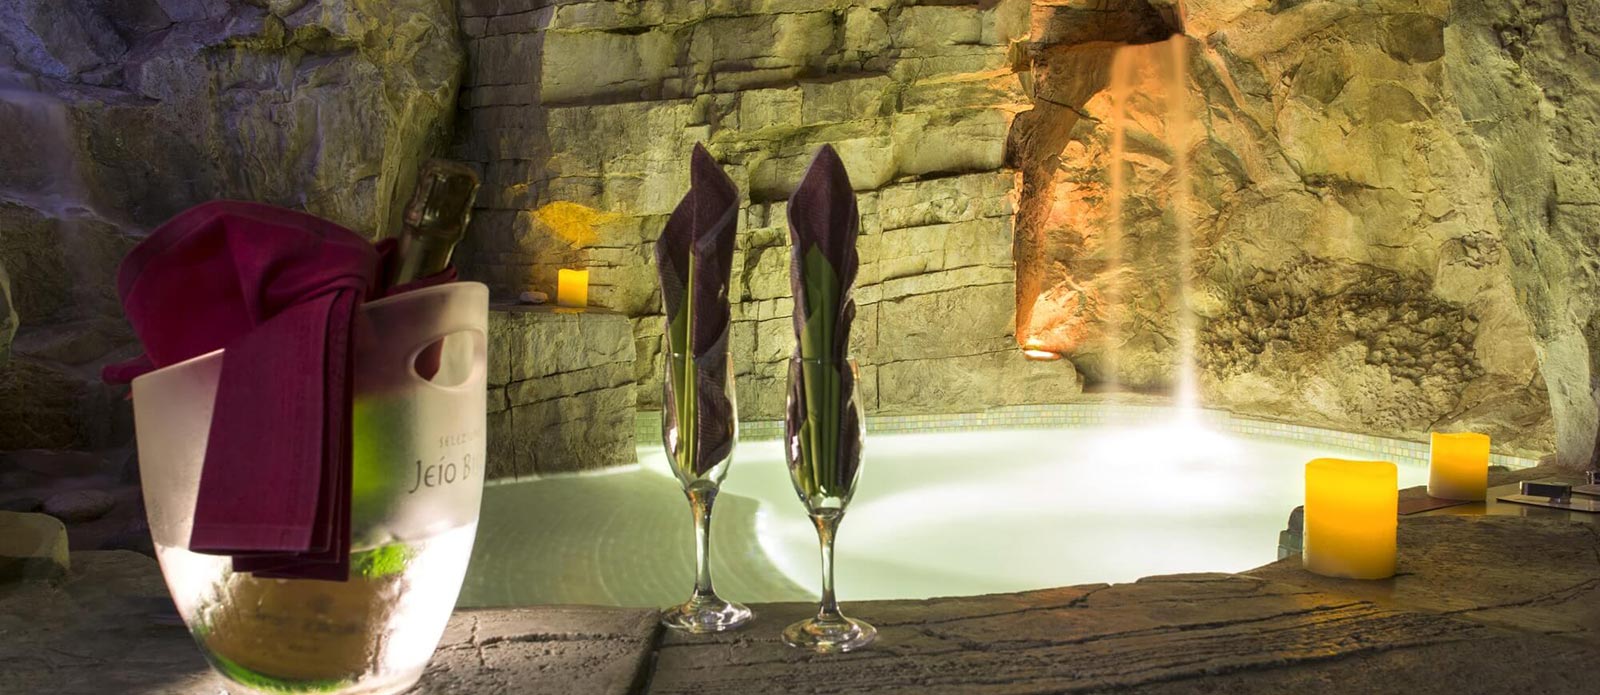 Motel K Wellness Suite Grotta Verde vista sulla mini piscina con idromassaggio e cascata, cromoterapia, bottiglia di champagne in secchiello del ghiaccio appoggiata a bordo piscina con 2 biccheri, servizio candele in suite camera a tema grotta verde di marina di andrano